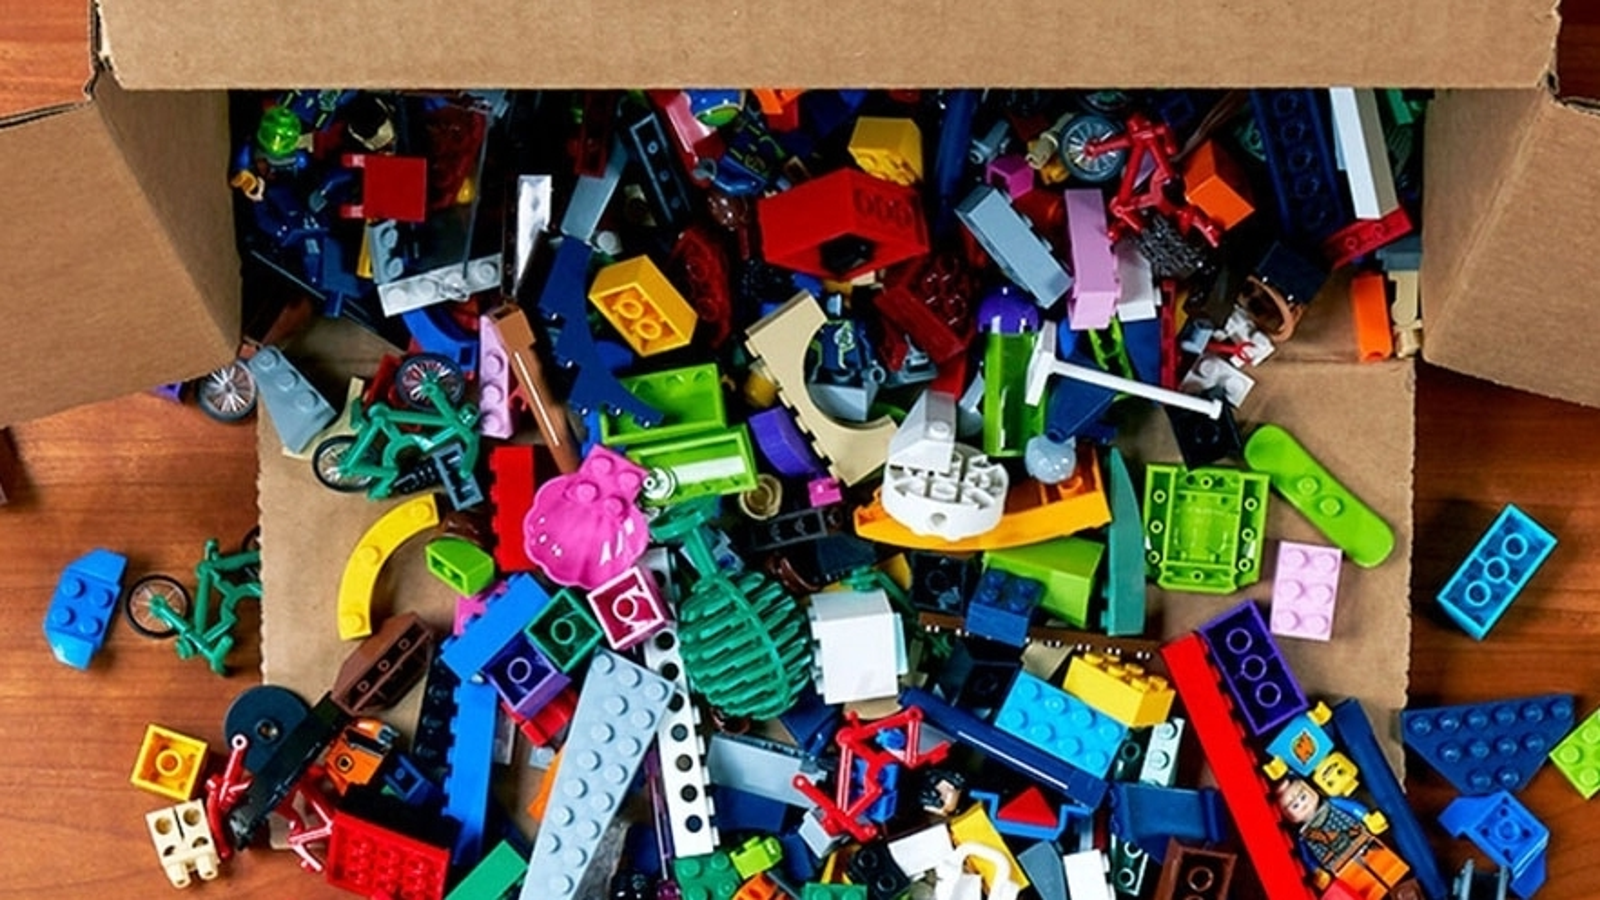 L'app che ti suggerisce che cosa costruire con i mattoncini Lego a  disposizione